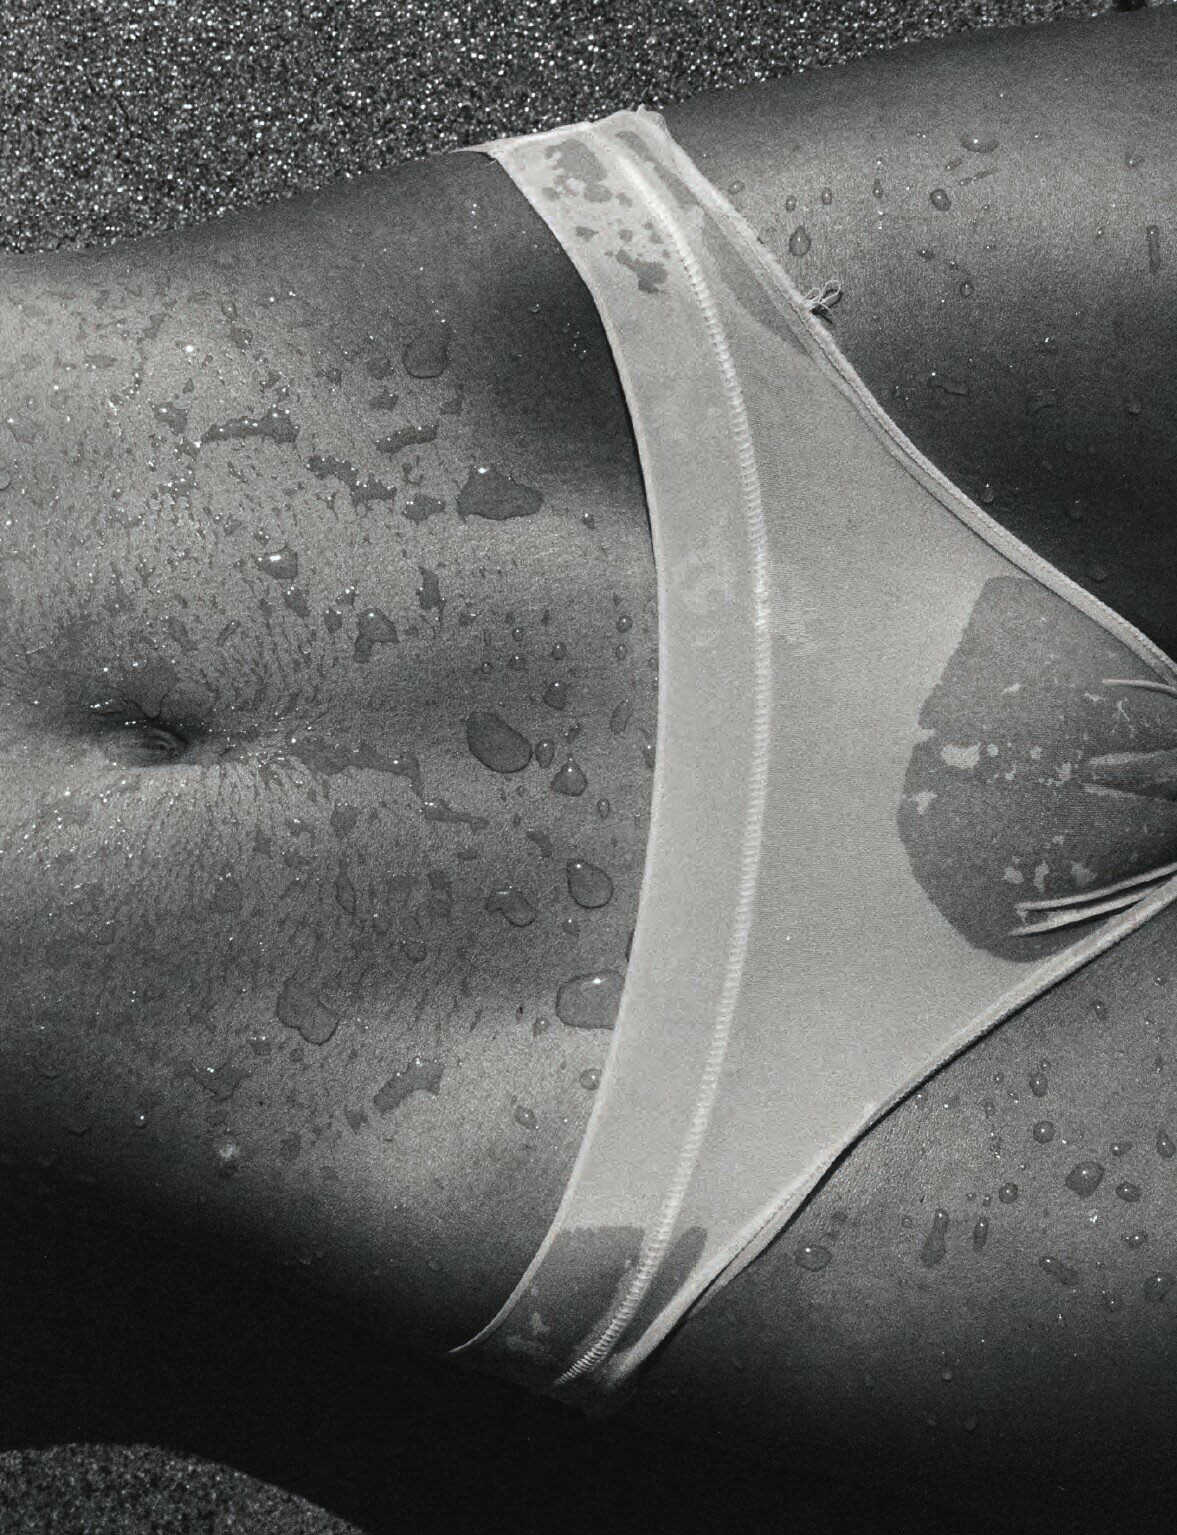 Γυμνές φωτογραφίες της μουνάρας Natasja Madsen